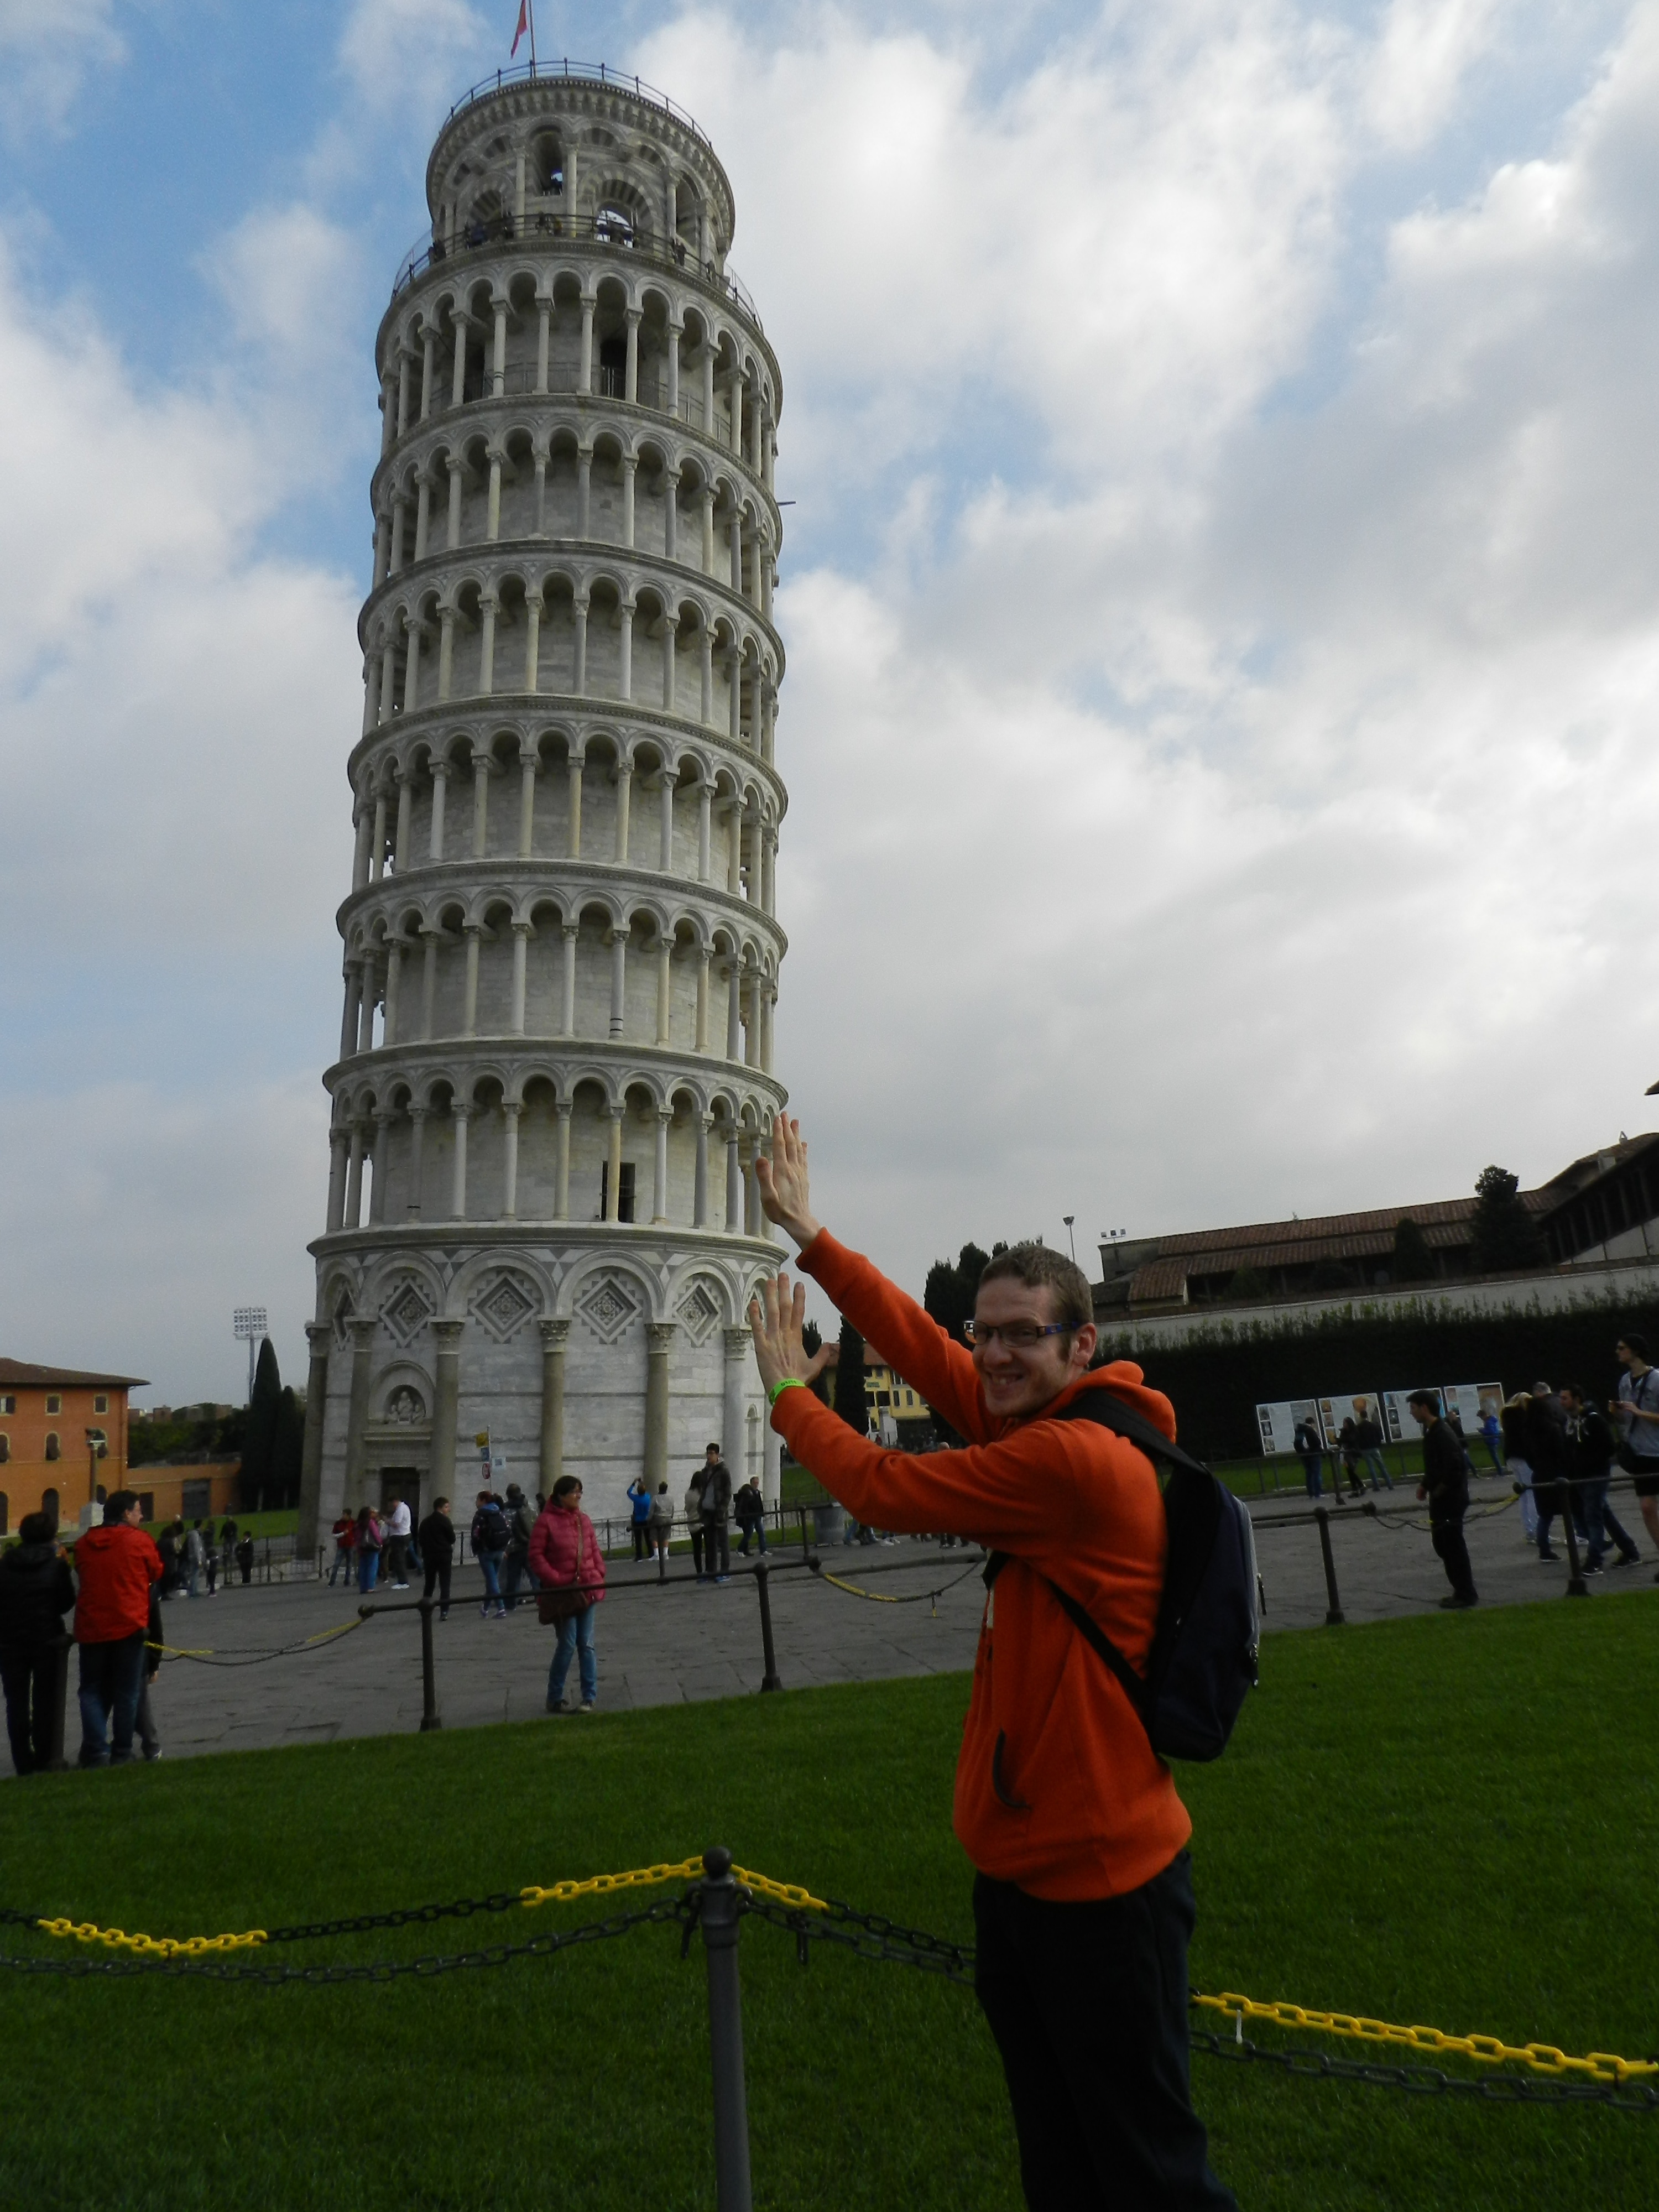 Passeggiando per le vie di Pisa